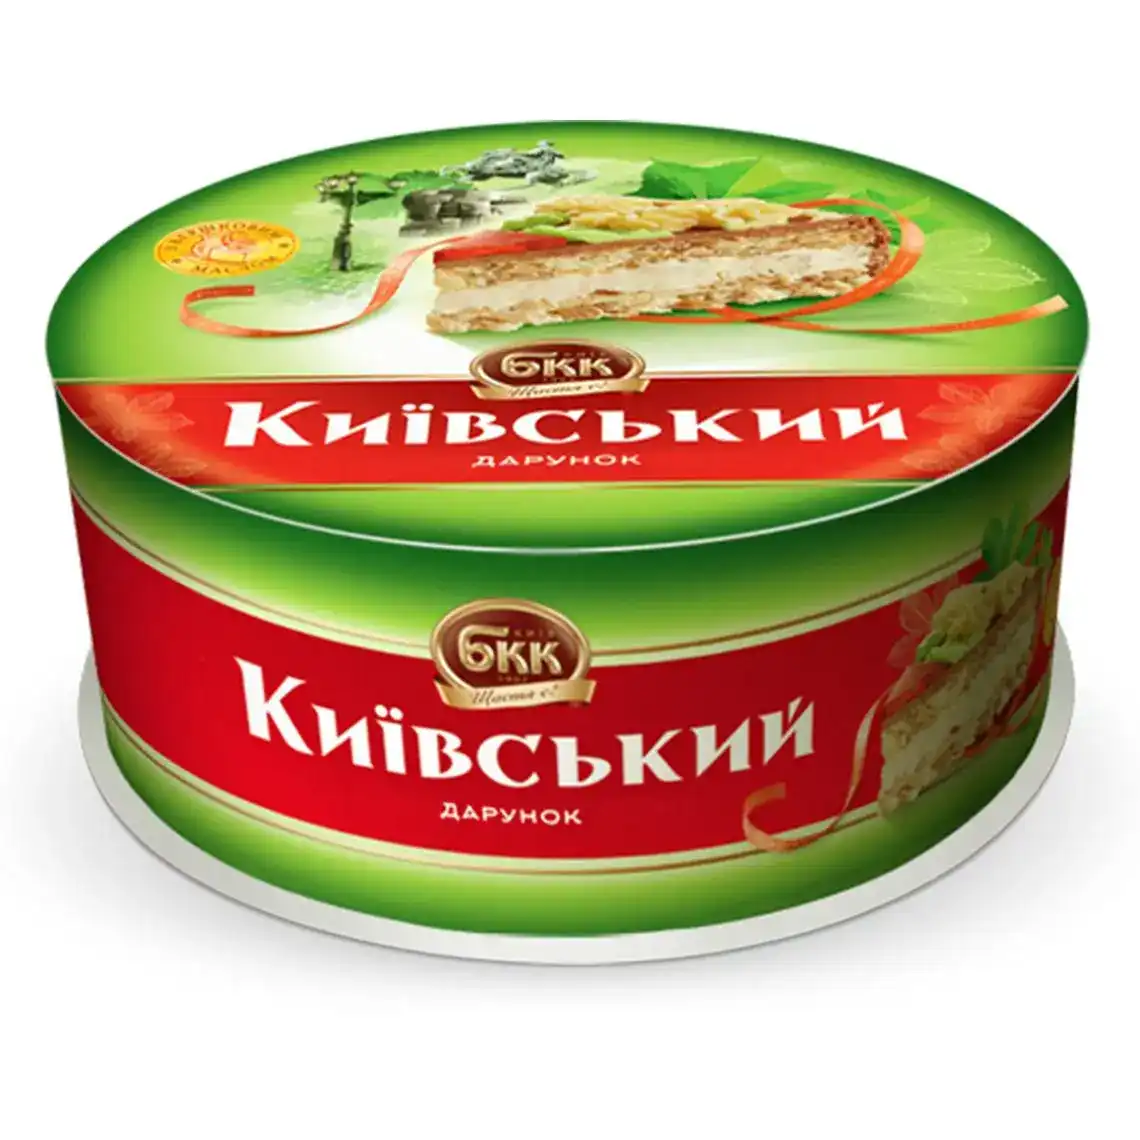 Фото 1 - Торт БКК Київський дарунок з арахісом 450 г